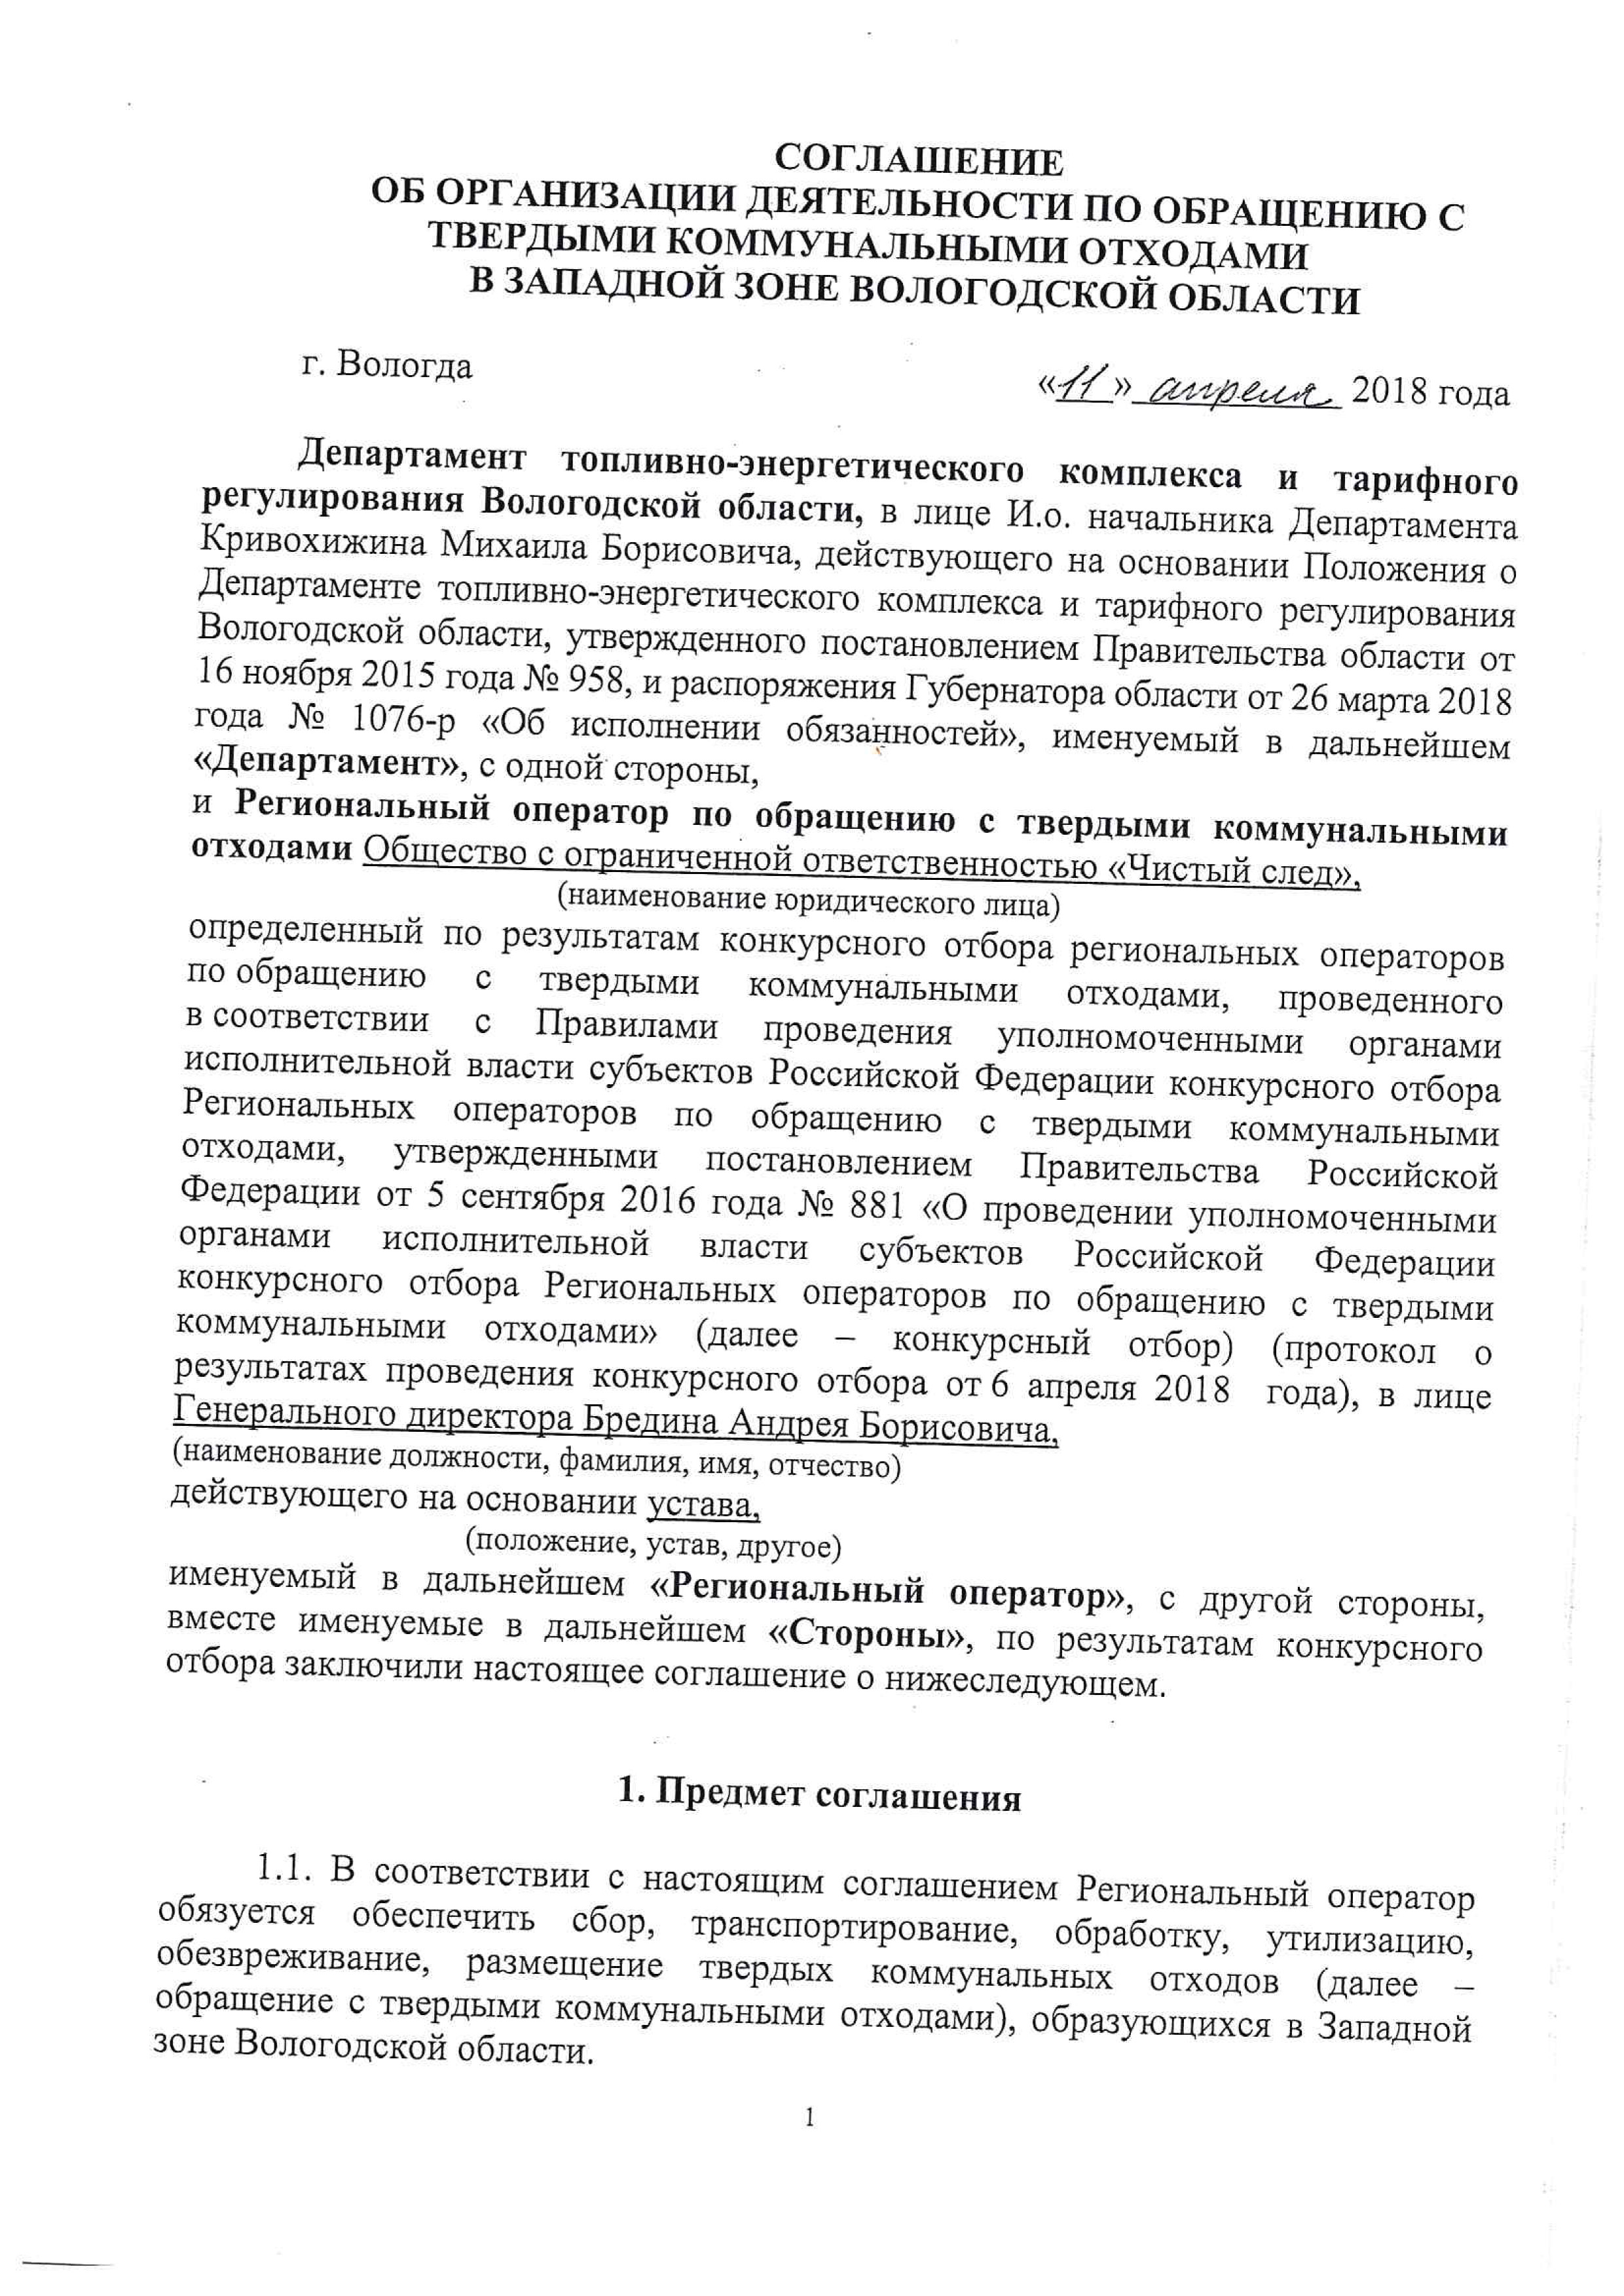 Соглашение об организации деятельности по обращению с твердыми коммунальными отходами	
				в западной зоне Вологодской области от 11 апреля 2018 года